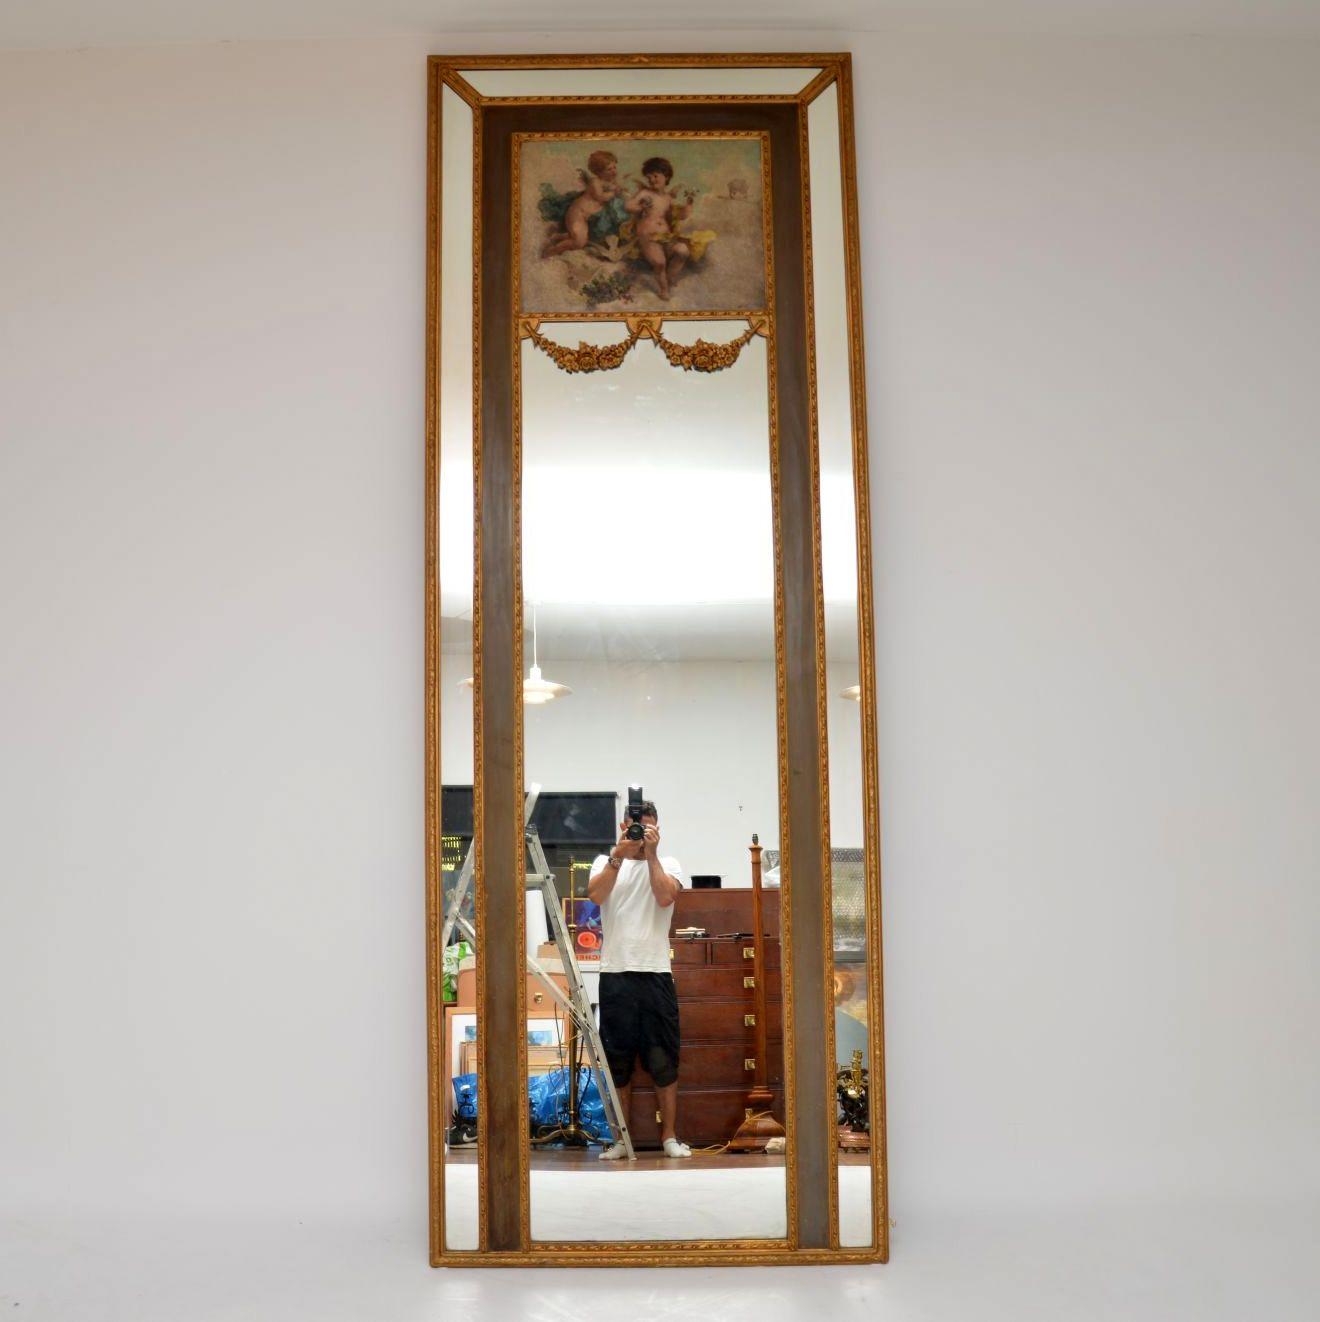 Großer antiker dekorativer Spiegel aus vergoldetem Holz mit einem signierten Ölgemälde auf dem oberen Abschnitt und anderen wunderbaren Merkmalen.

Es ist sehr schwer, ein gutes Bild von diesem Spiegel zu zeigen und die großen Proportionen zu